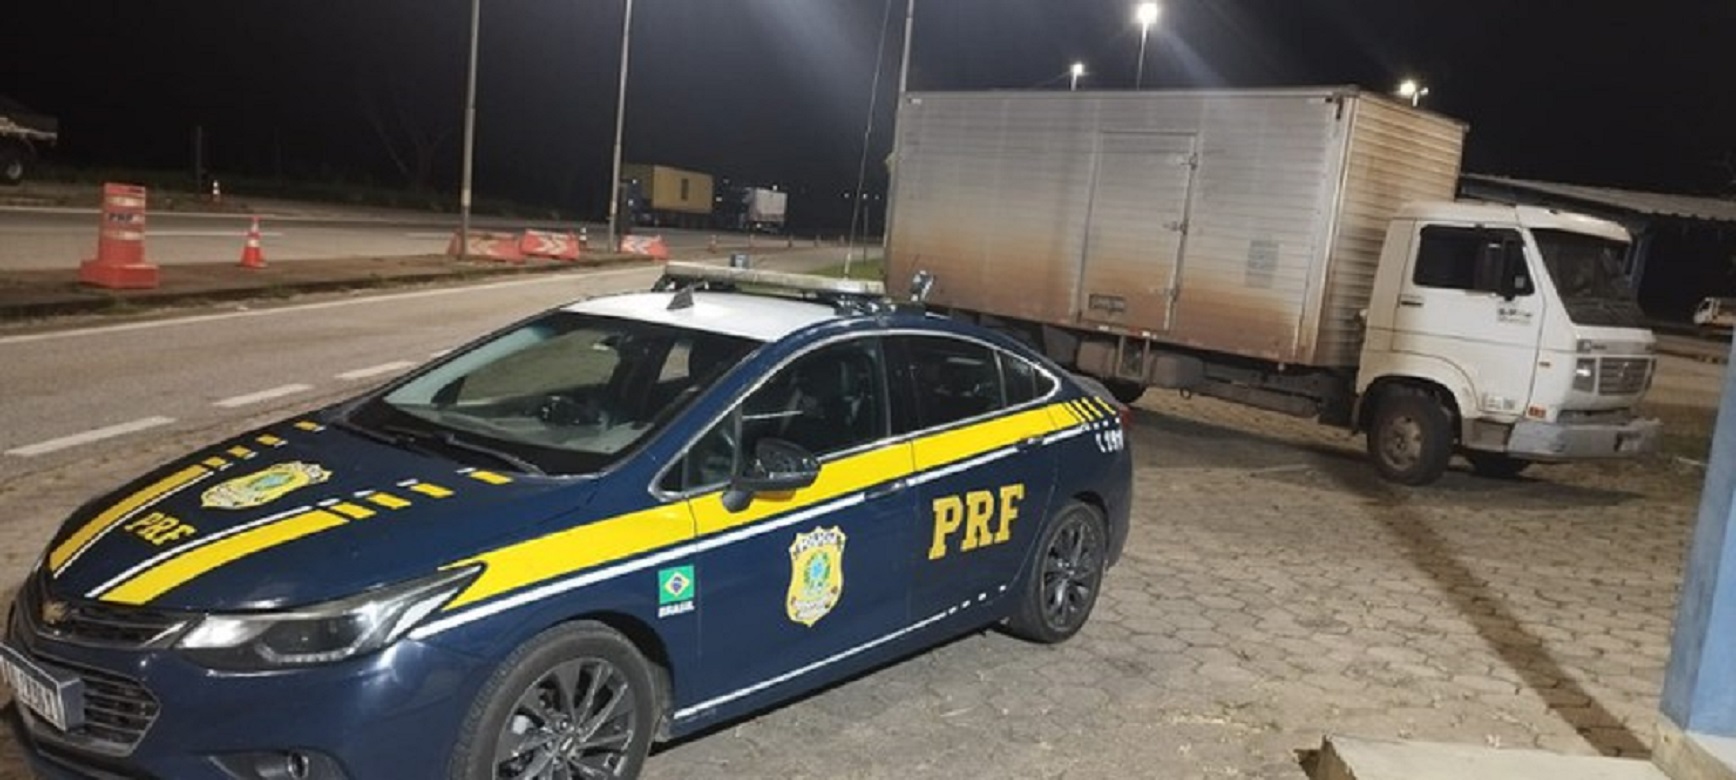 PRF recupera caminhão roubado em Minas Gerais